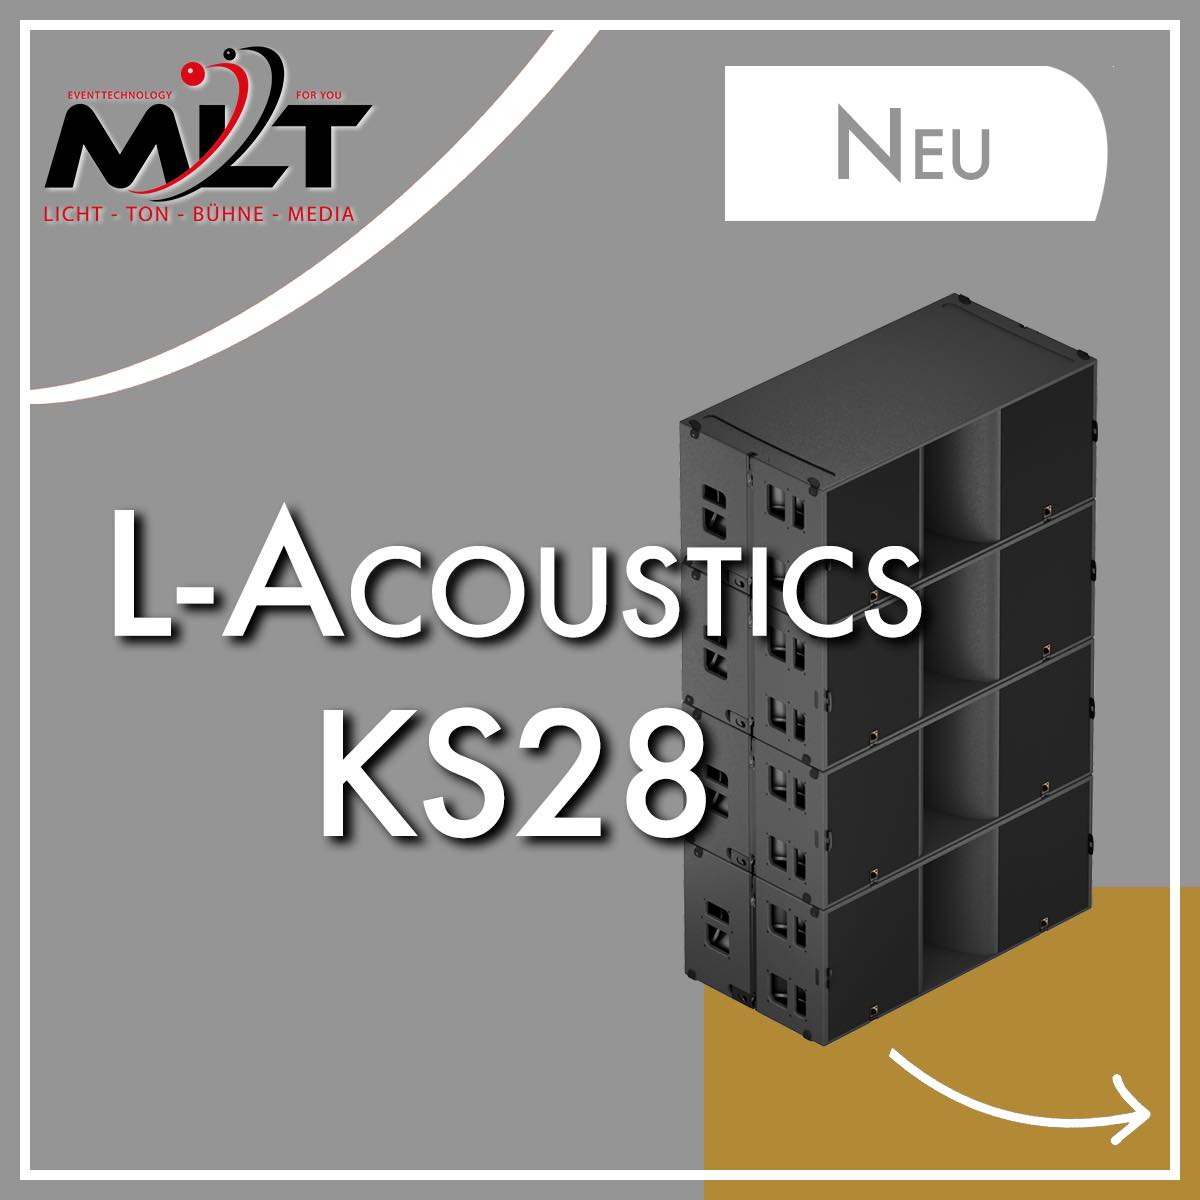 L-Acoustics KS28 Subwoofer bei MLT mieten